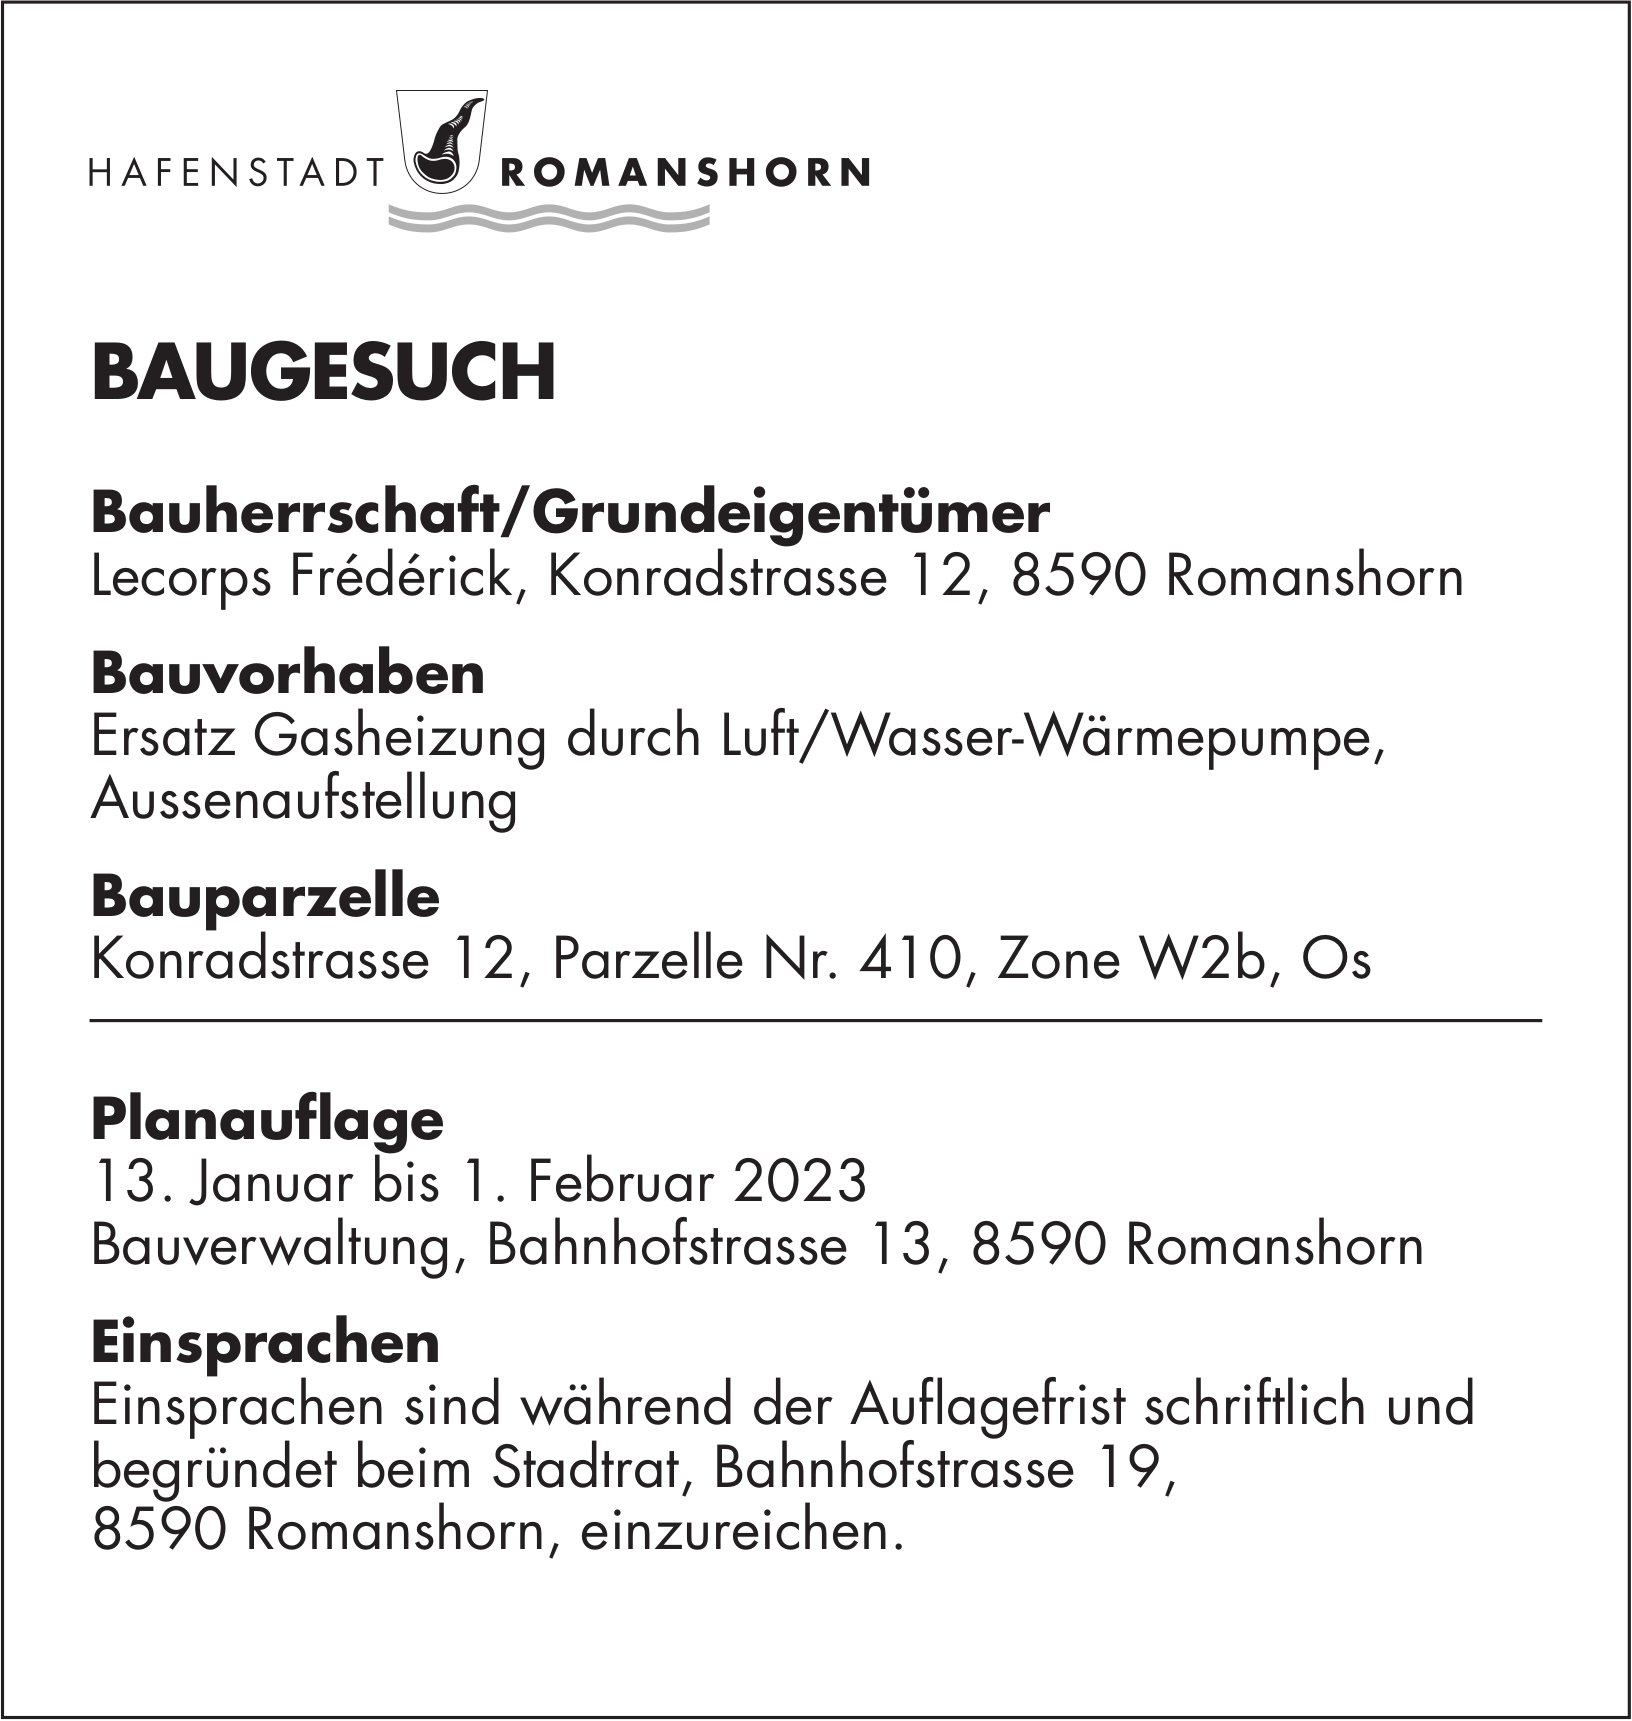 Baugesuche vom 13. Januar 2023, Hafenstadt Romanshorn